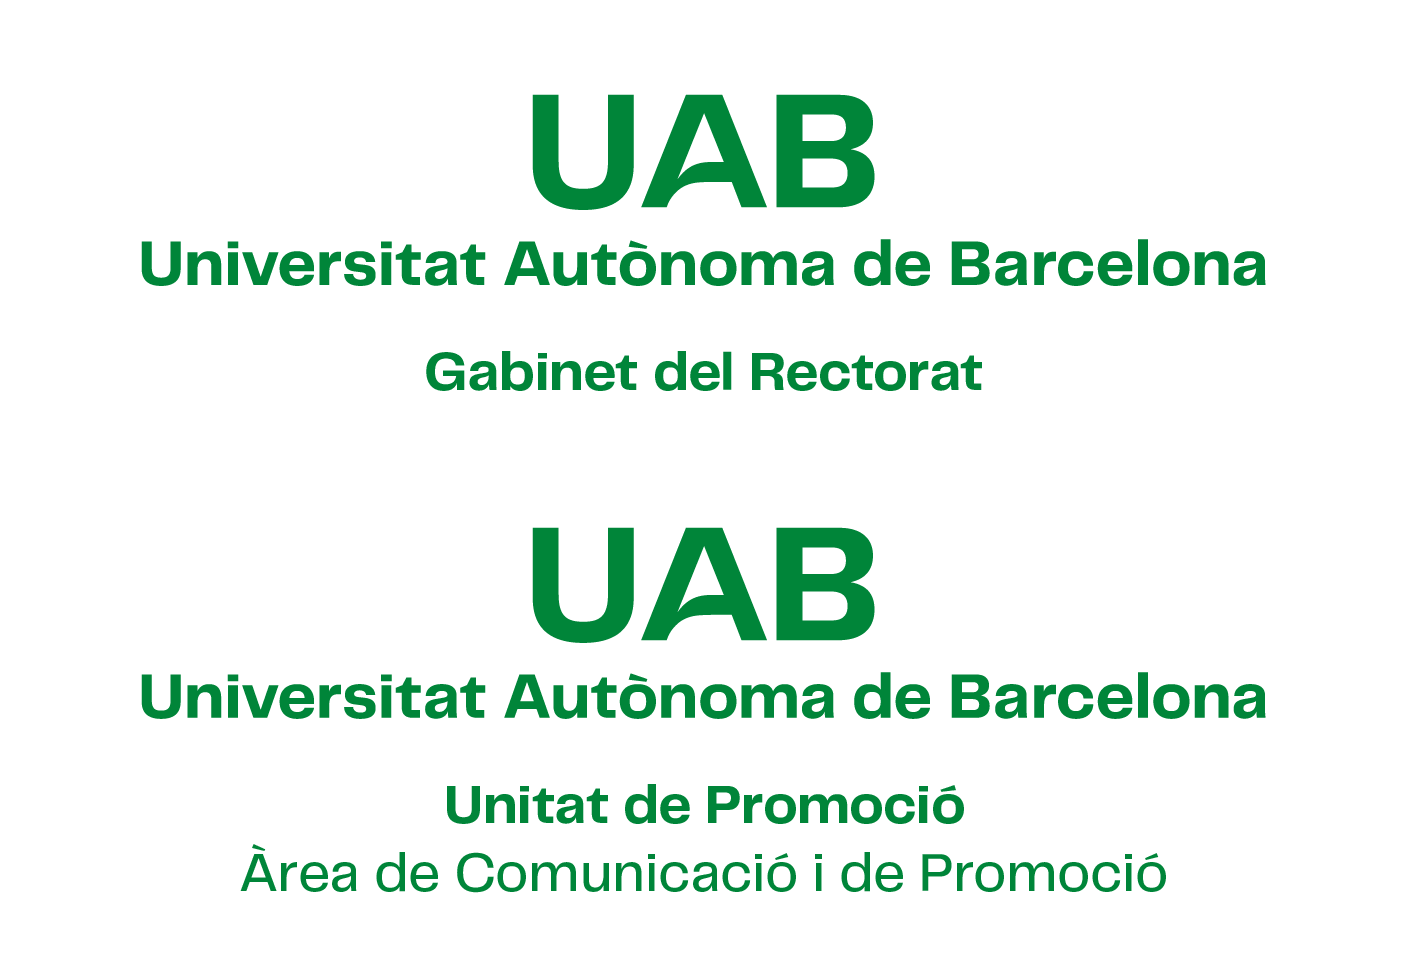 Exemple de construcció de la composició horitzontal amb versió 2 del logotip UAB